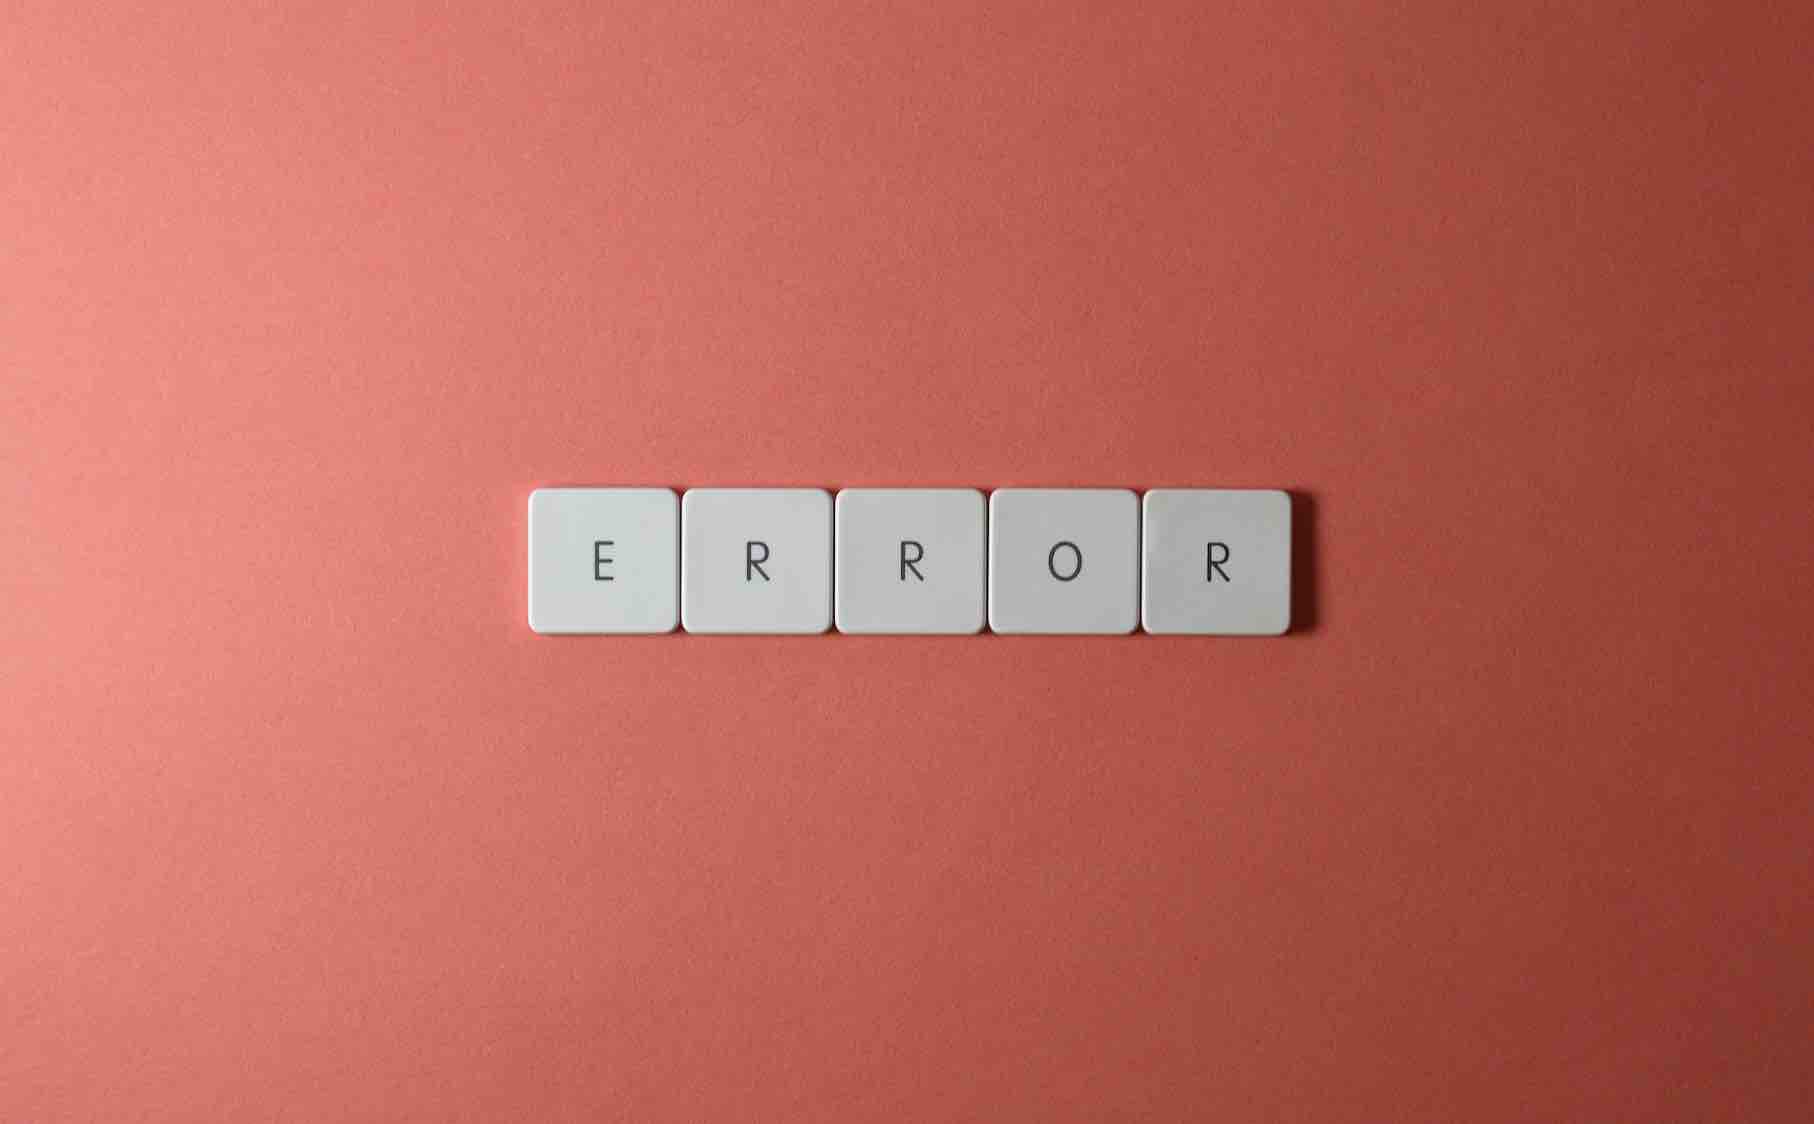 texte "error".